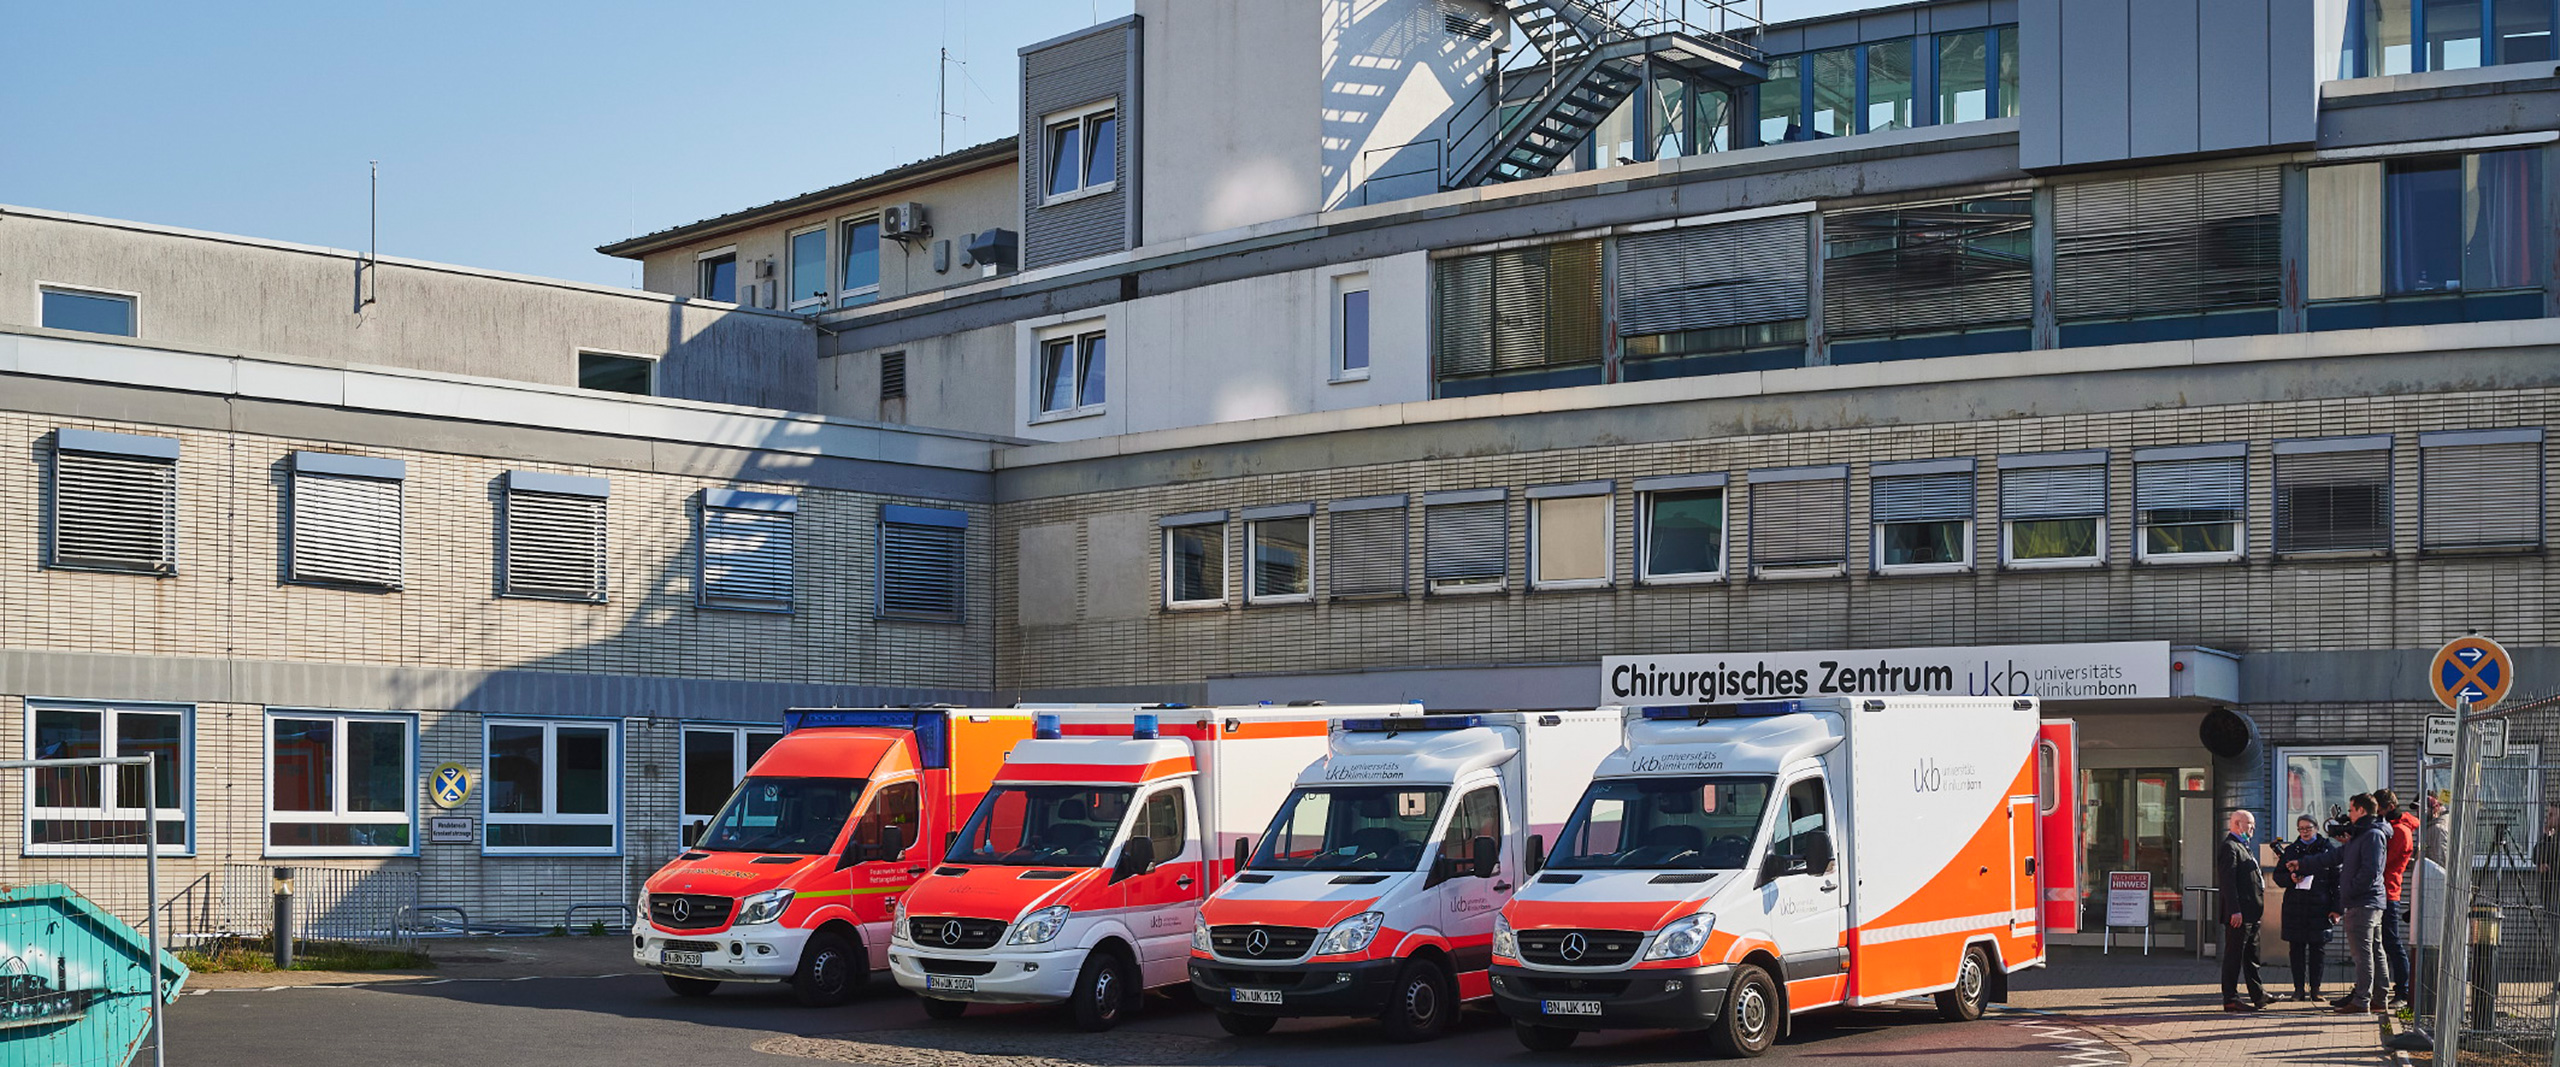 Rettungswagen vor dem Chirurgischen Zentrum am Universitätsklinikum Bonn